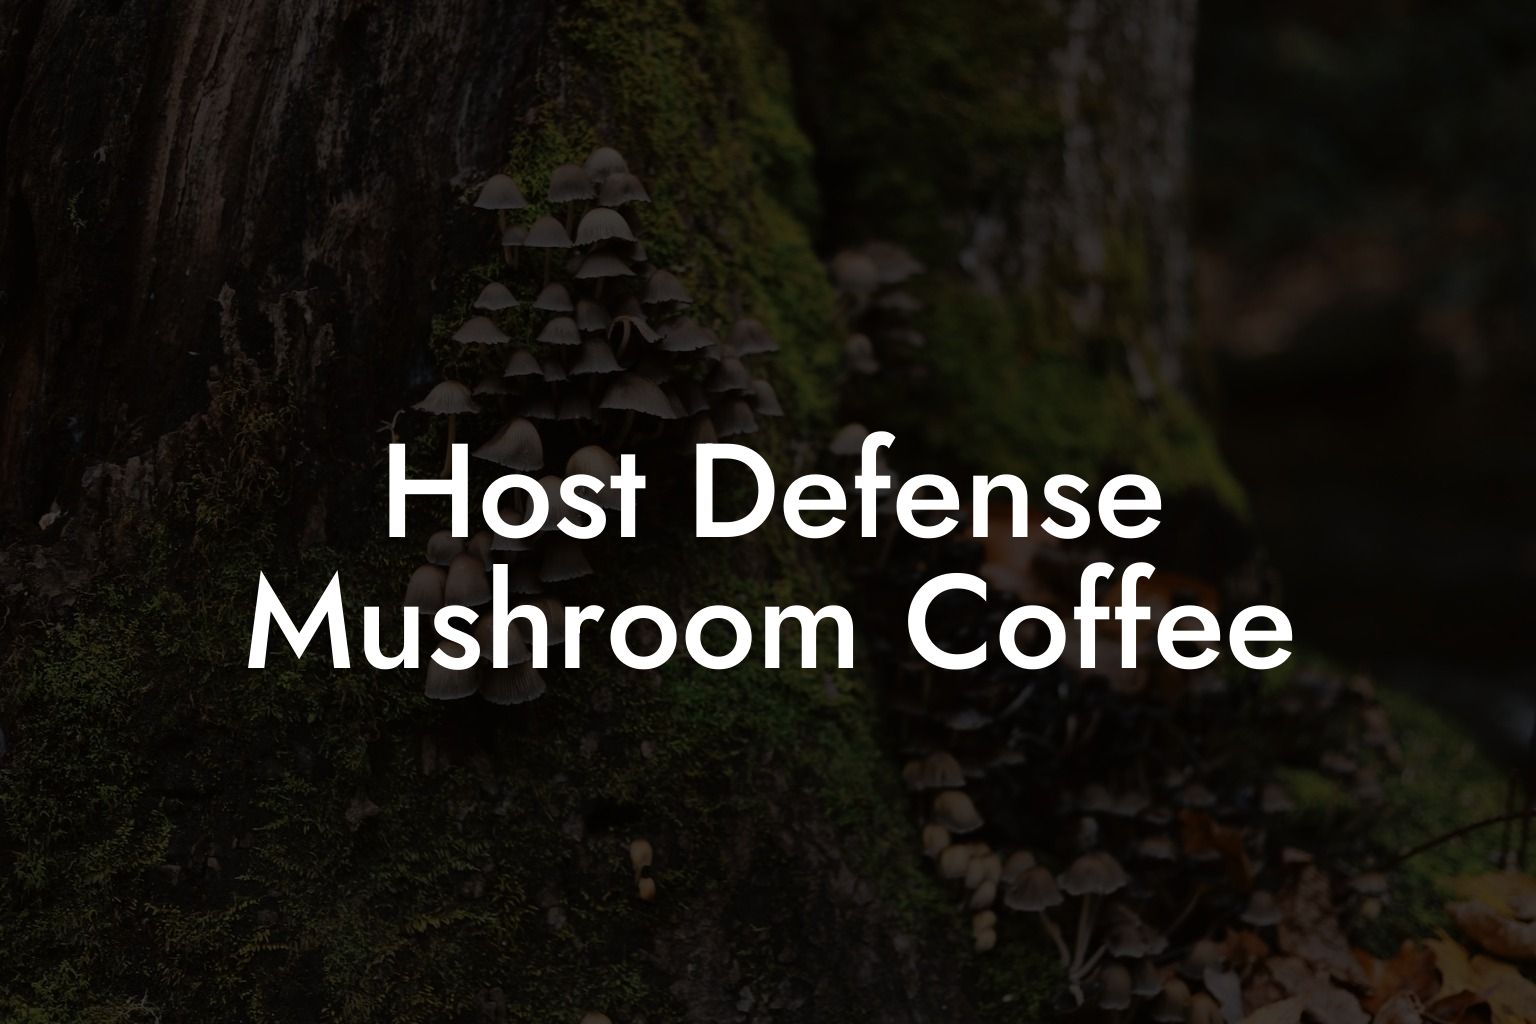 Host Defense Mushroom Coffee